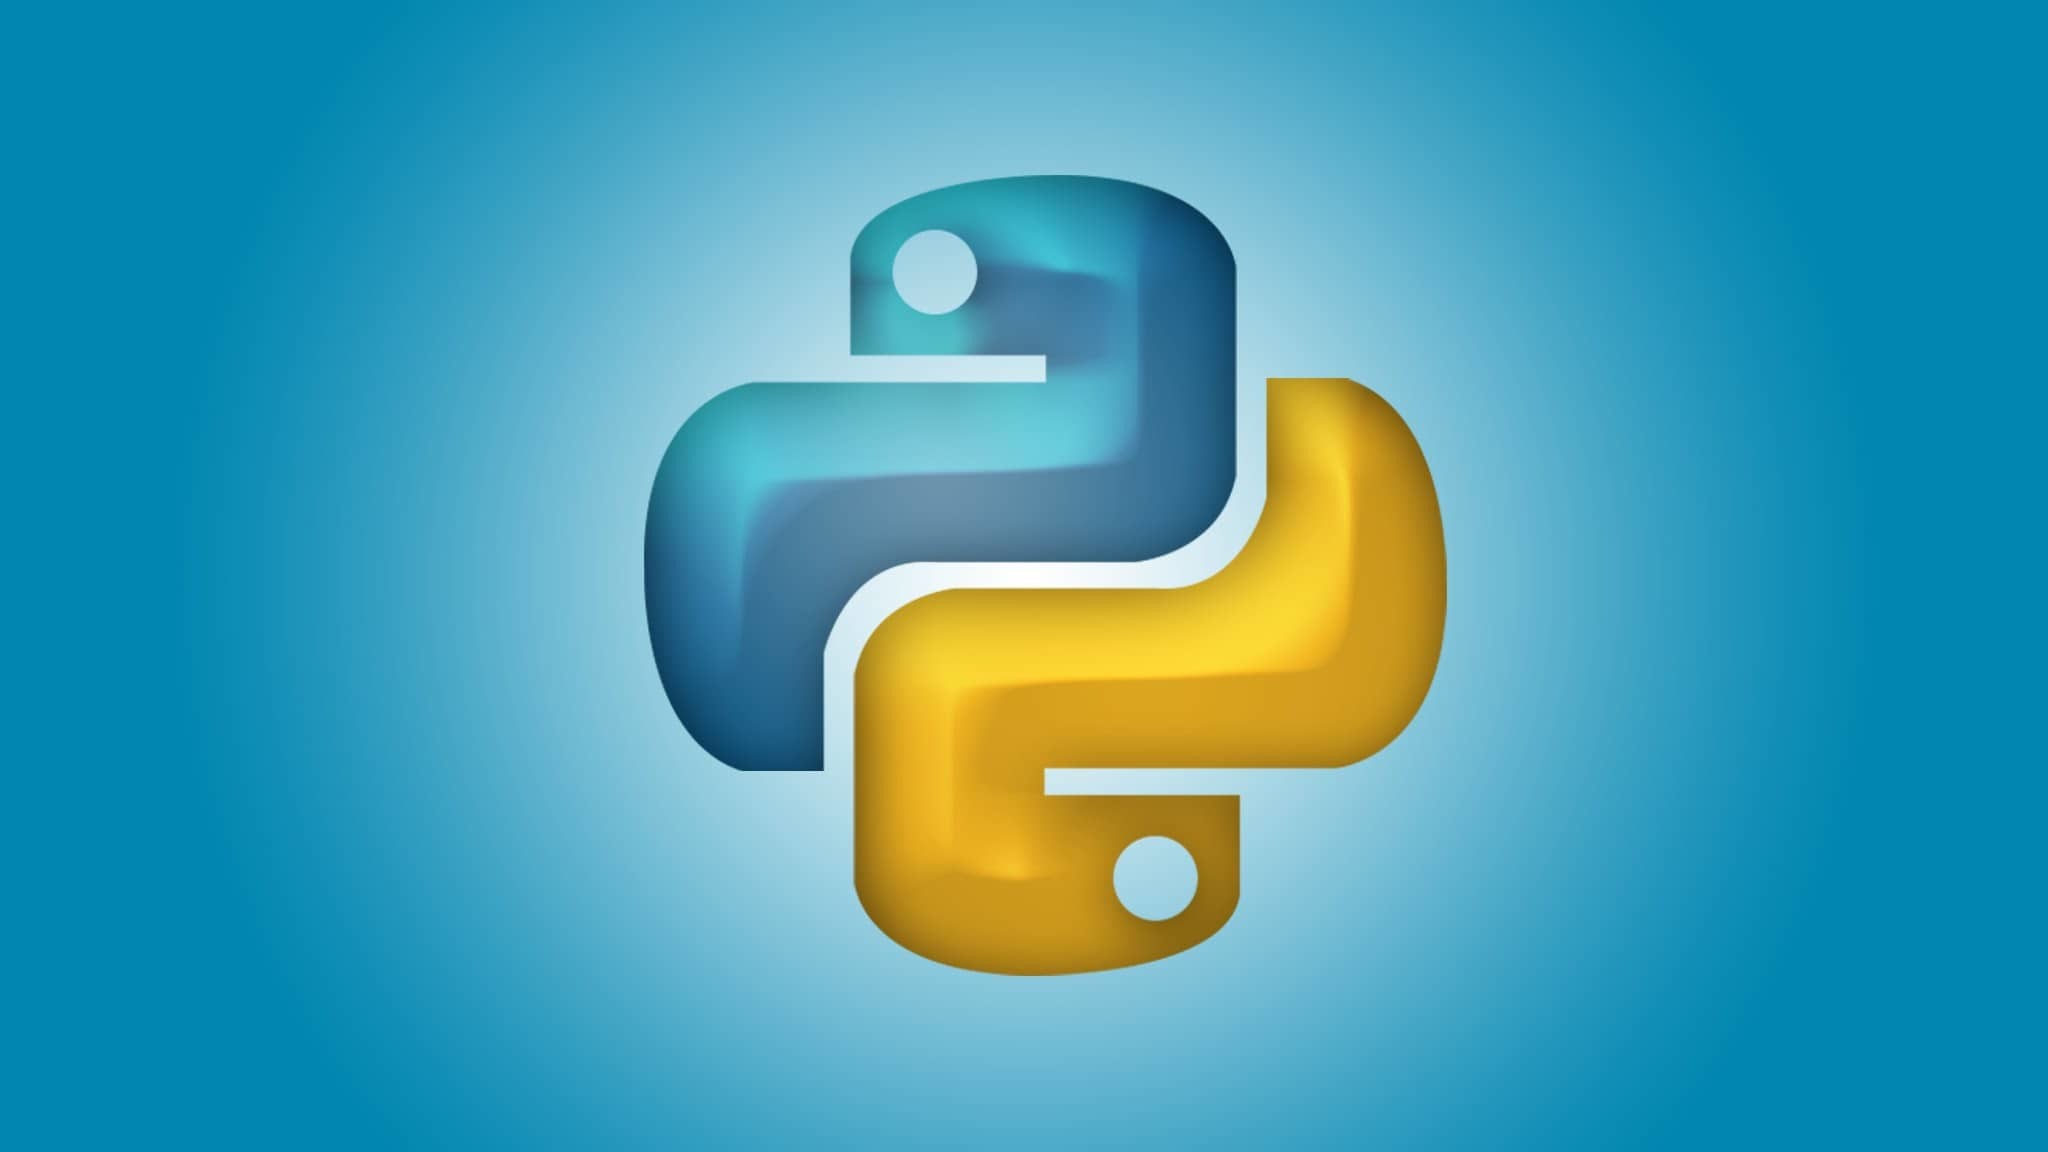 Python programming language - logo